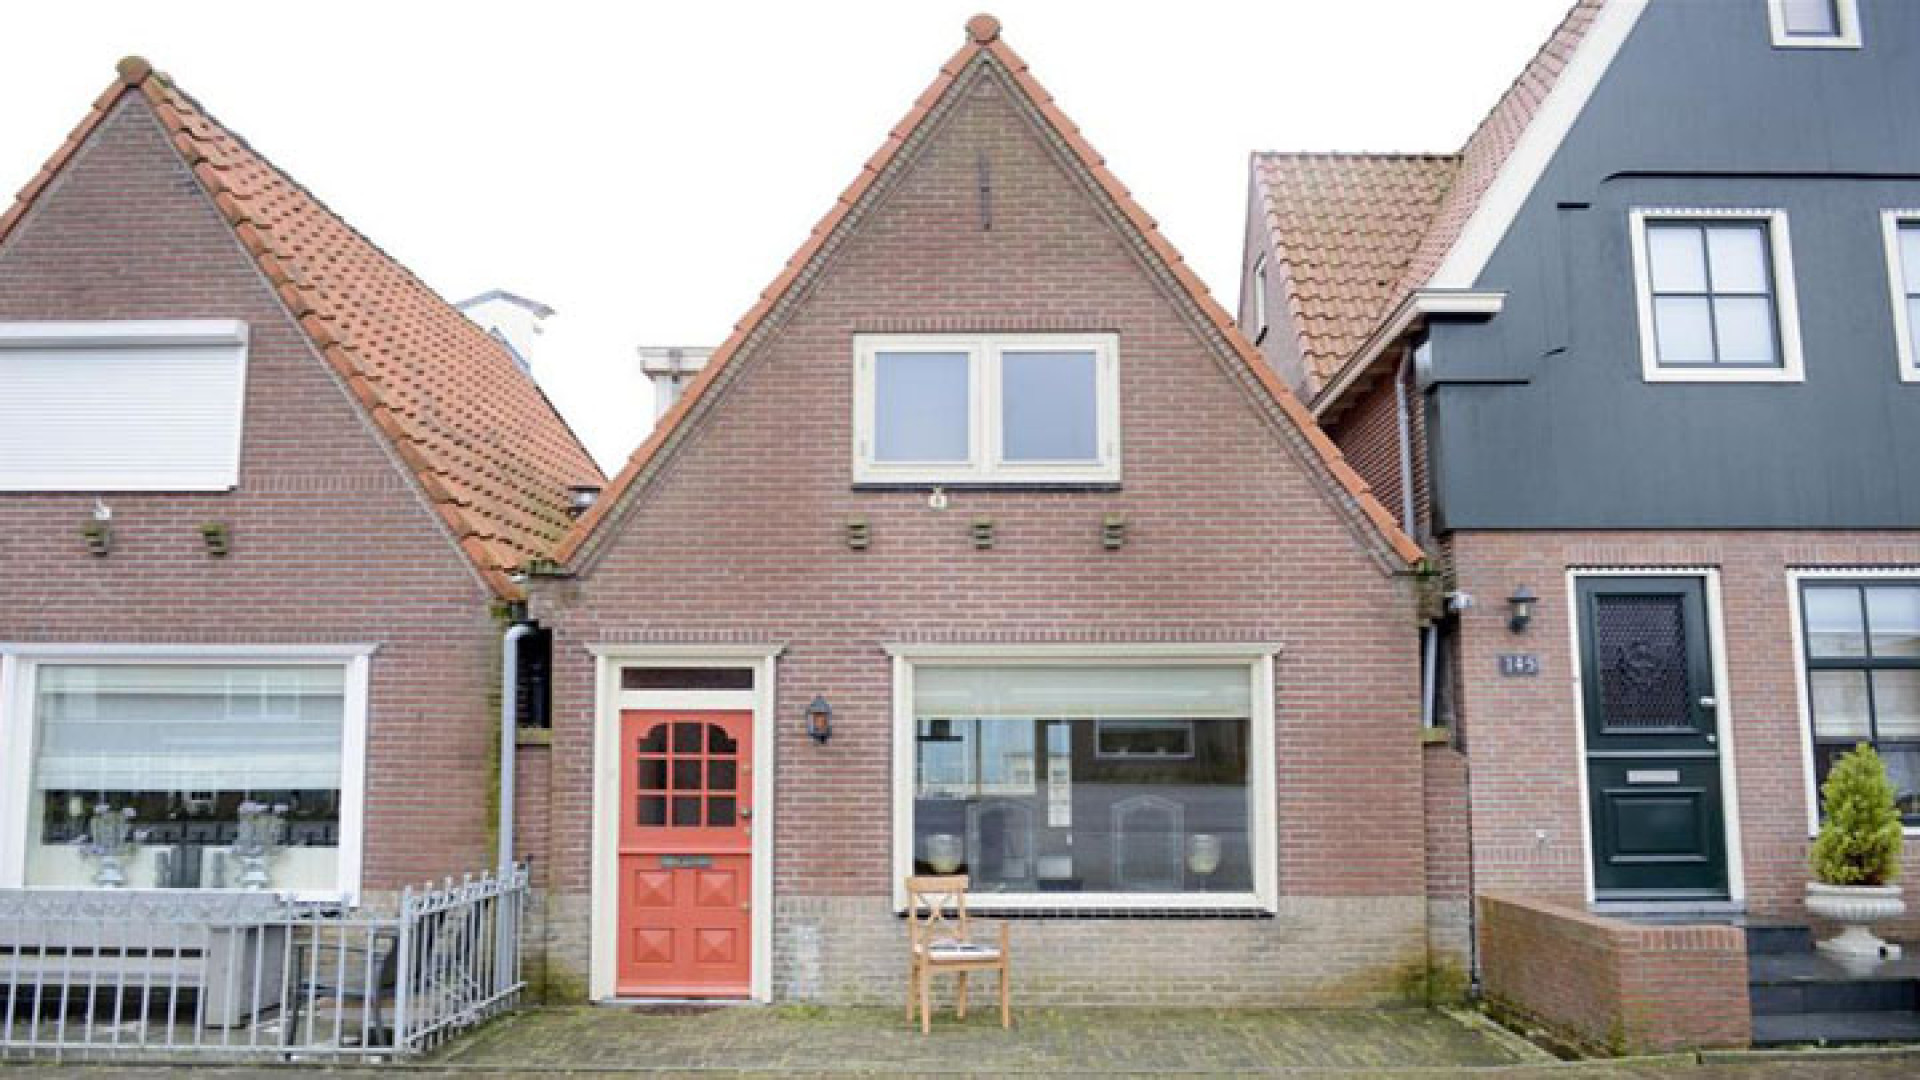 Funderingsprobleem nekt verkoop Volendamse huis van Yolanthe. Zie foto's 2